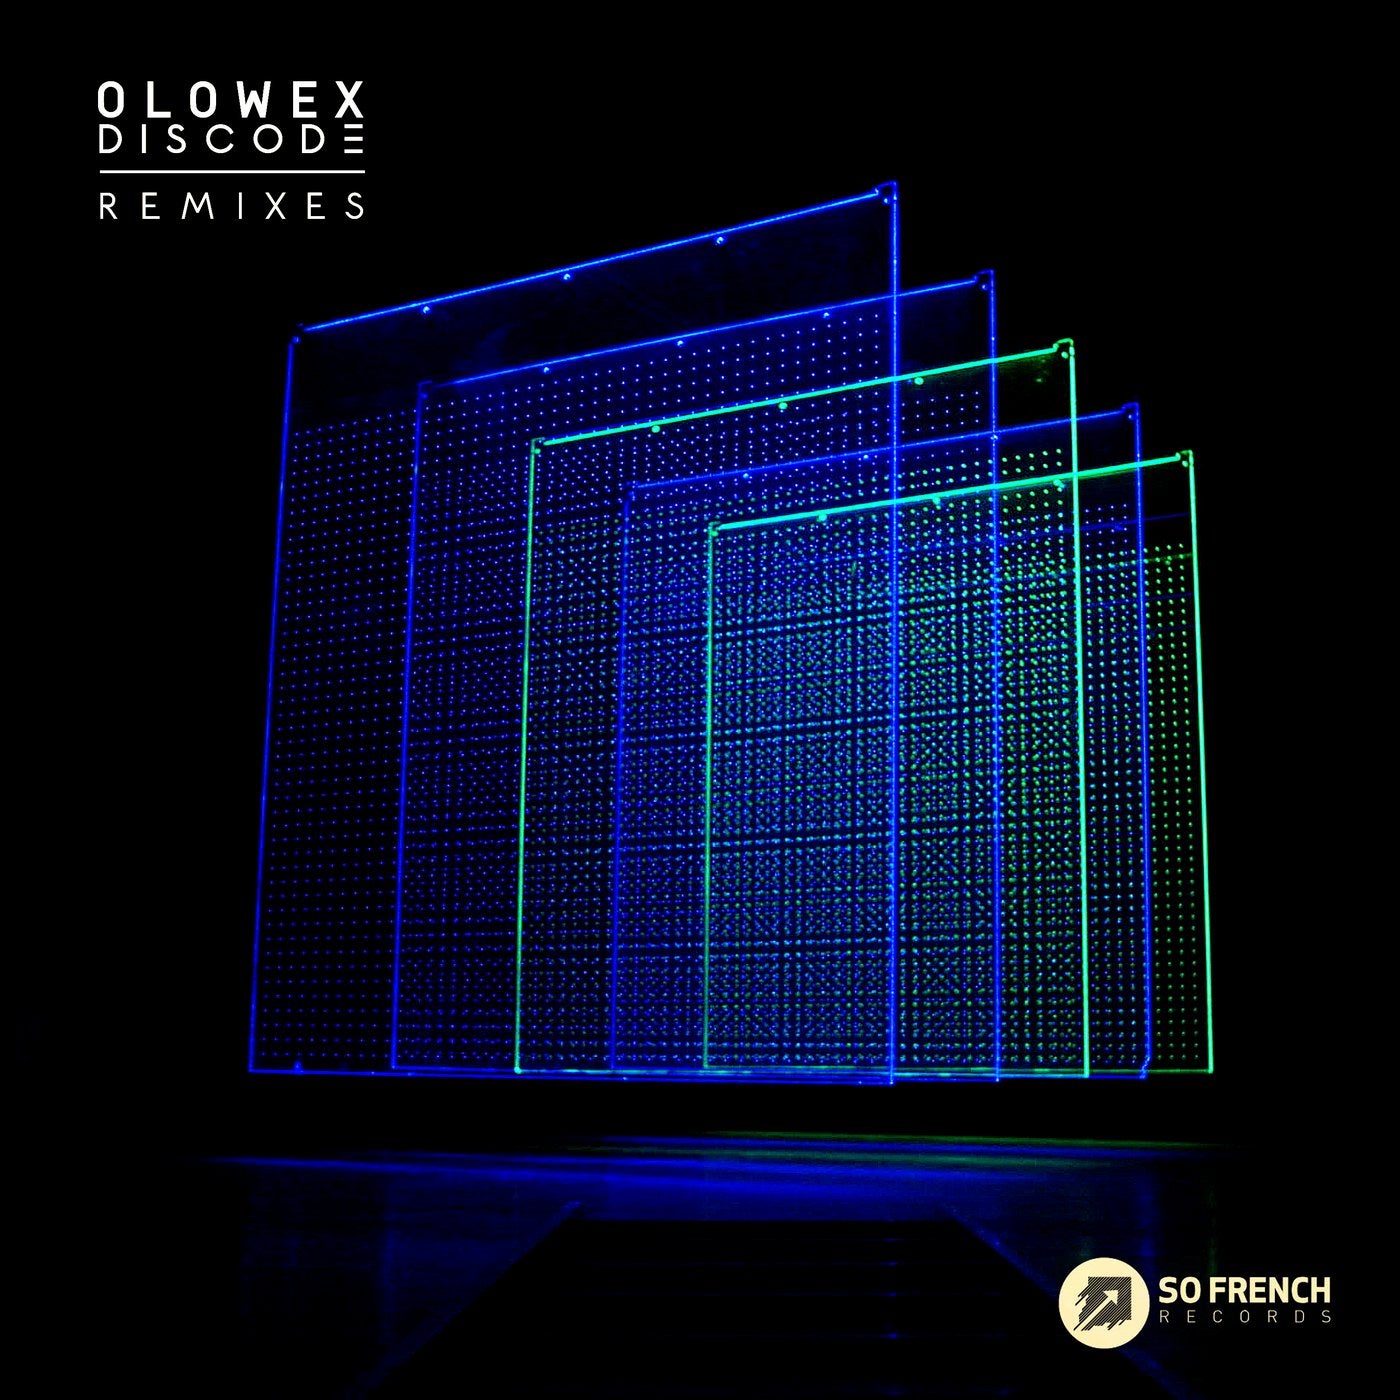 Discode Remixes